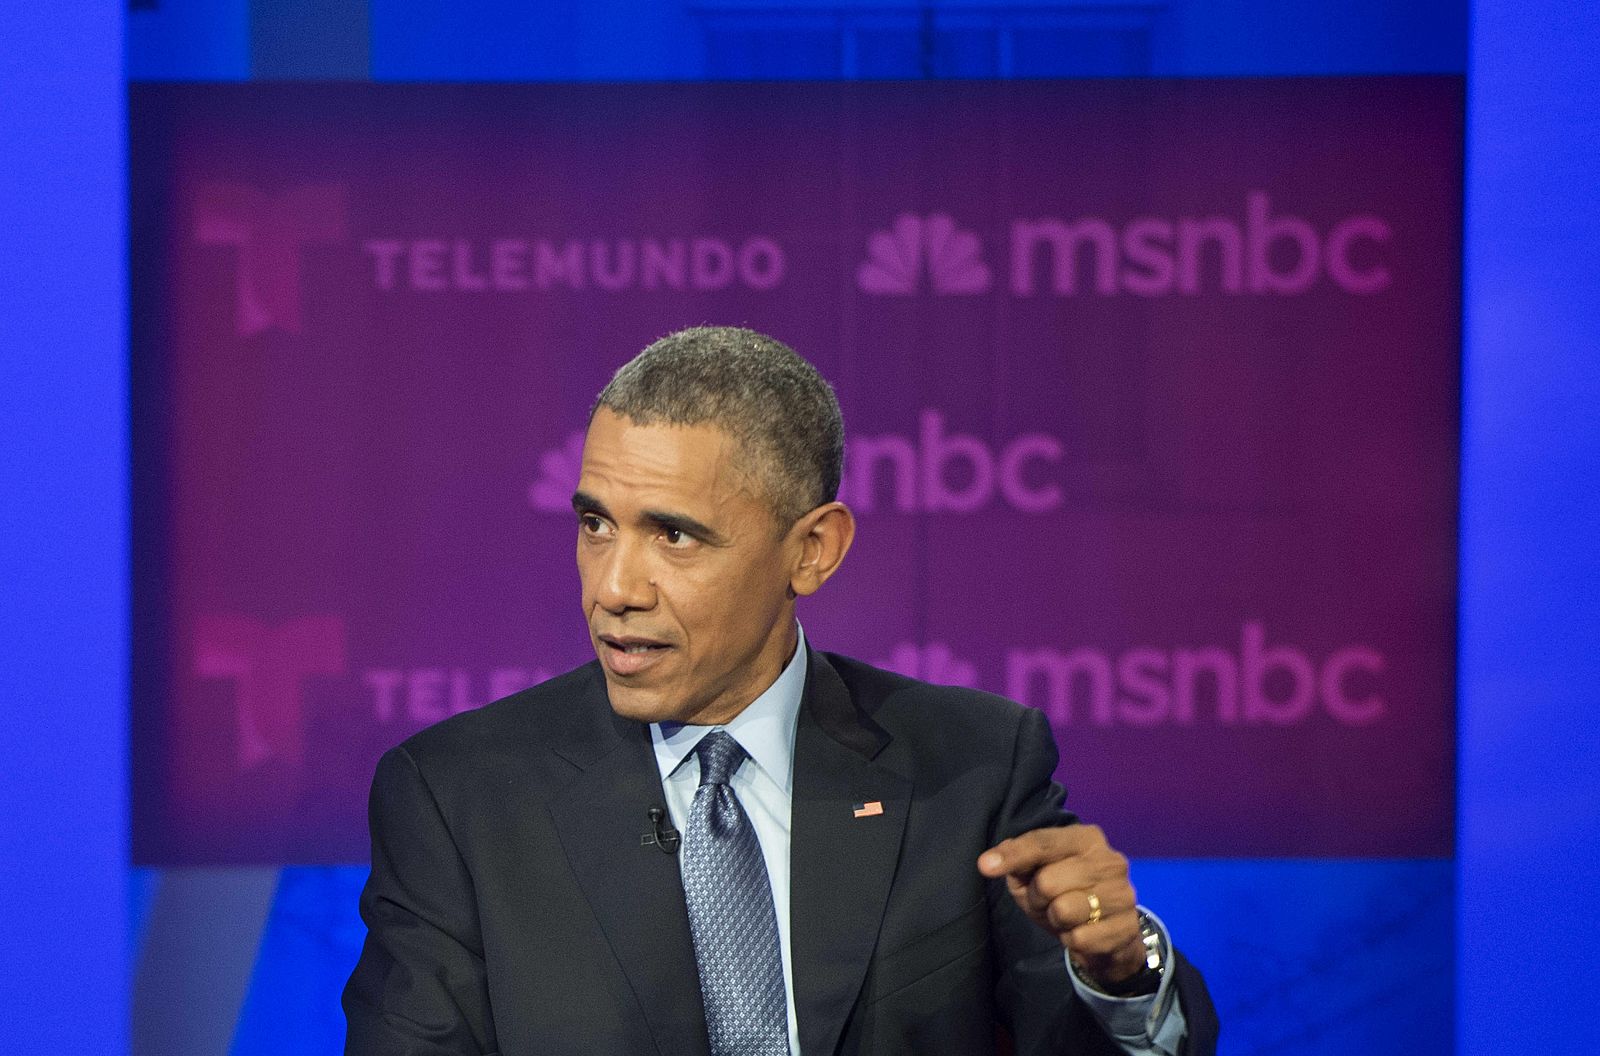 El presidente Obama dice que luchará para aprobar su reforma migratoria durante un debate en Miami